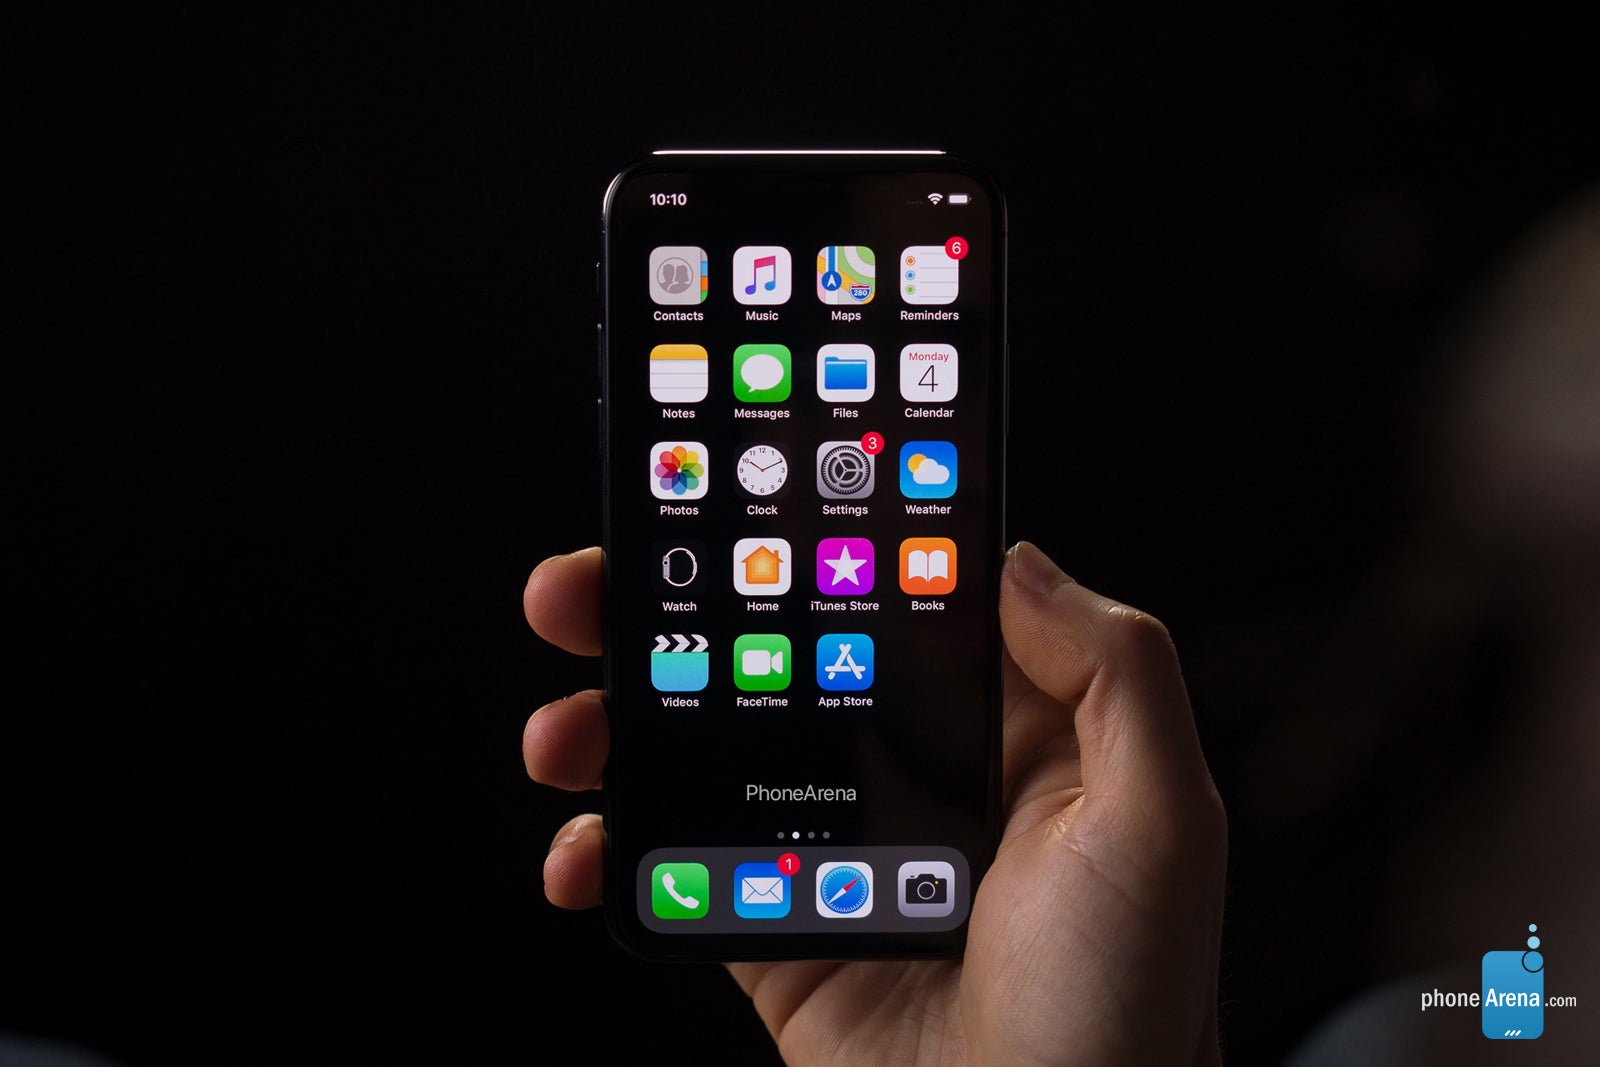 Massive leak details Apple's 2019 roadmap: New iPhones, iPad, Apple Watch, AirPods, MacBook, more